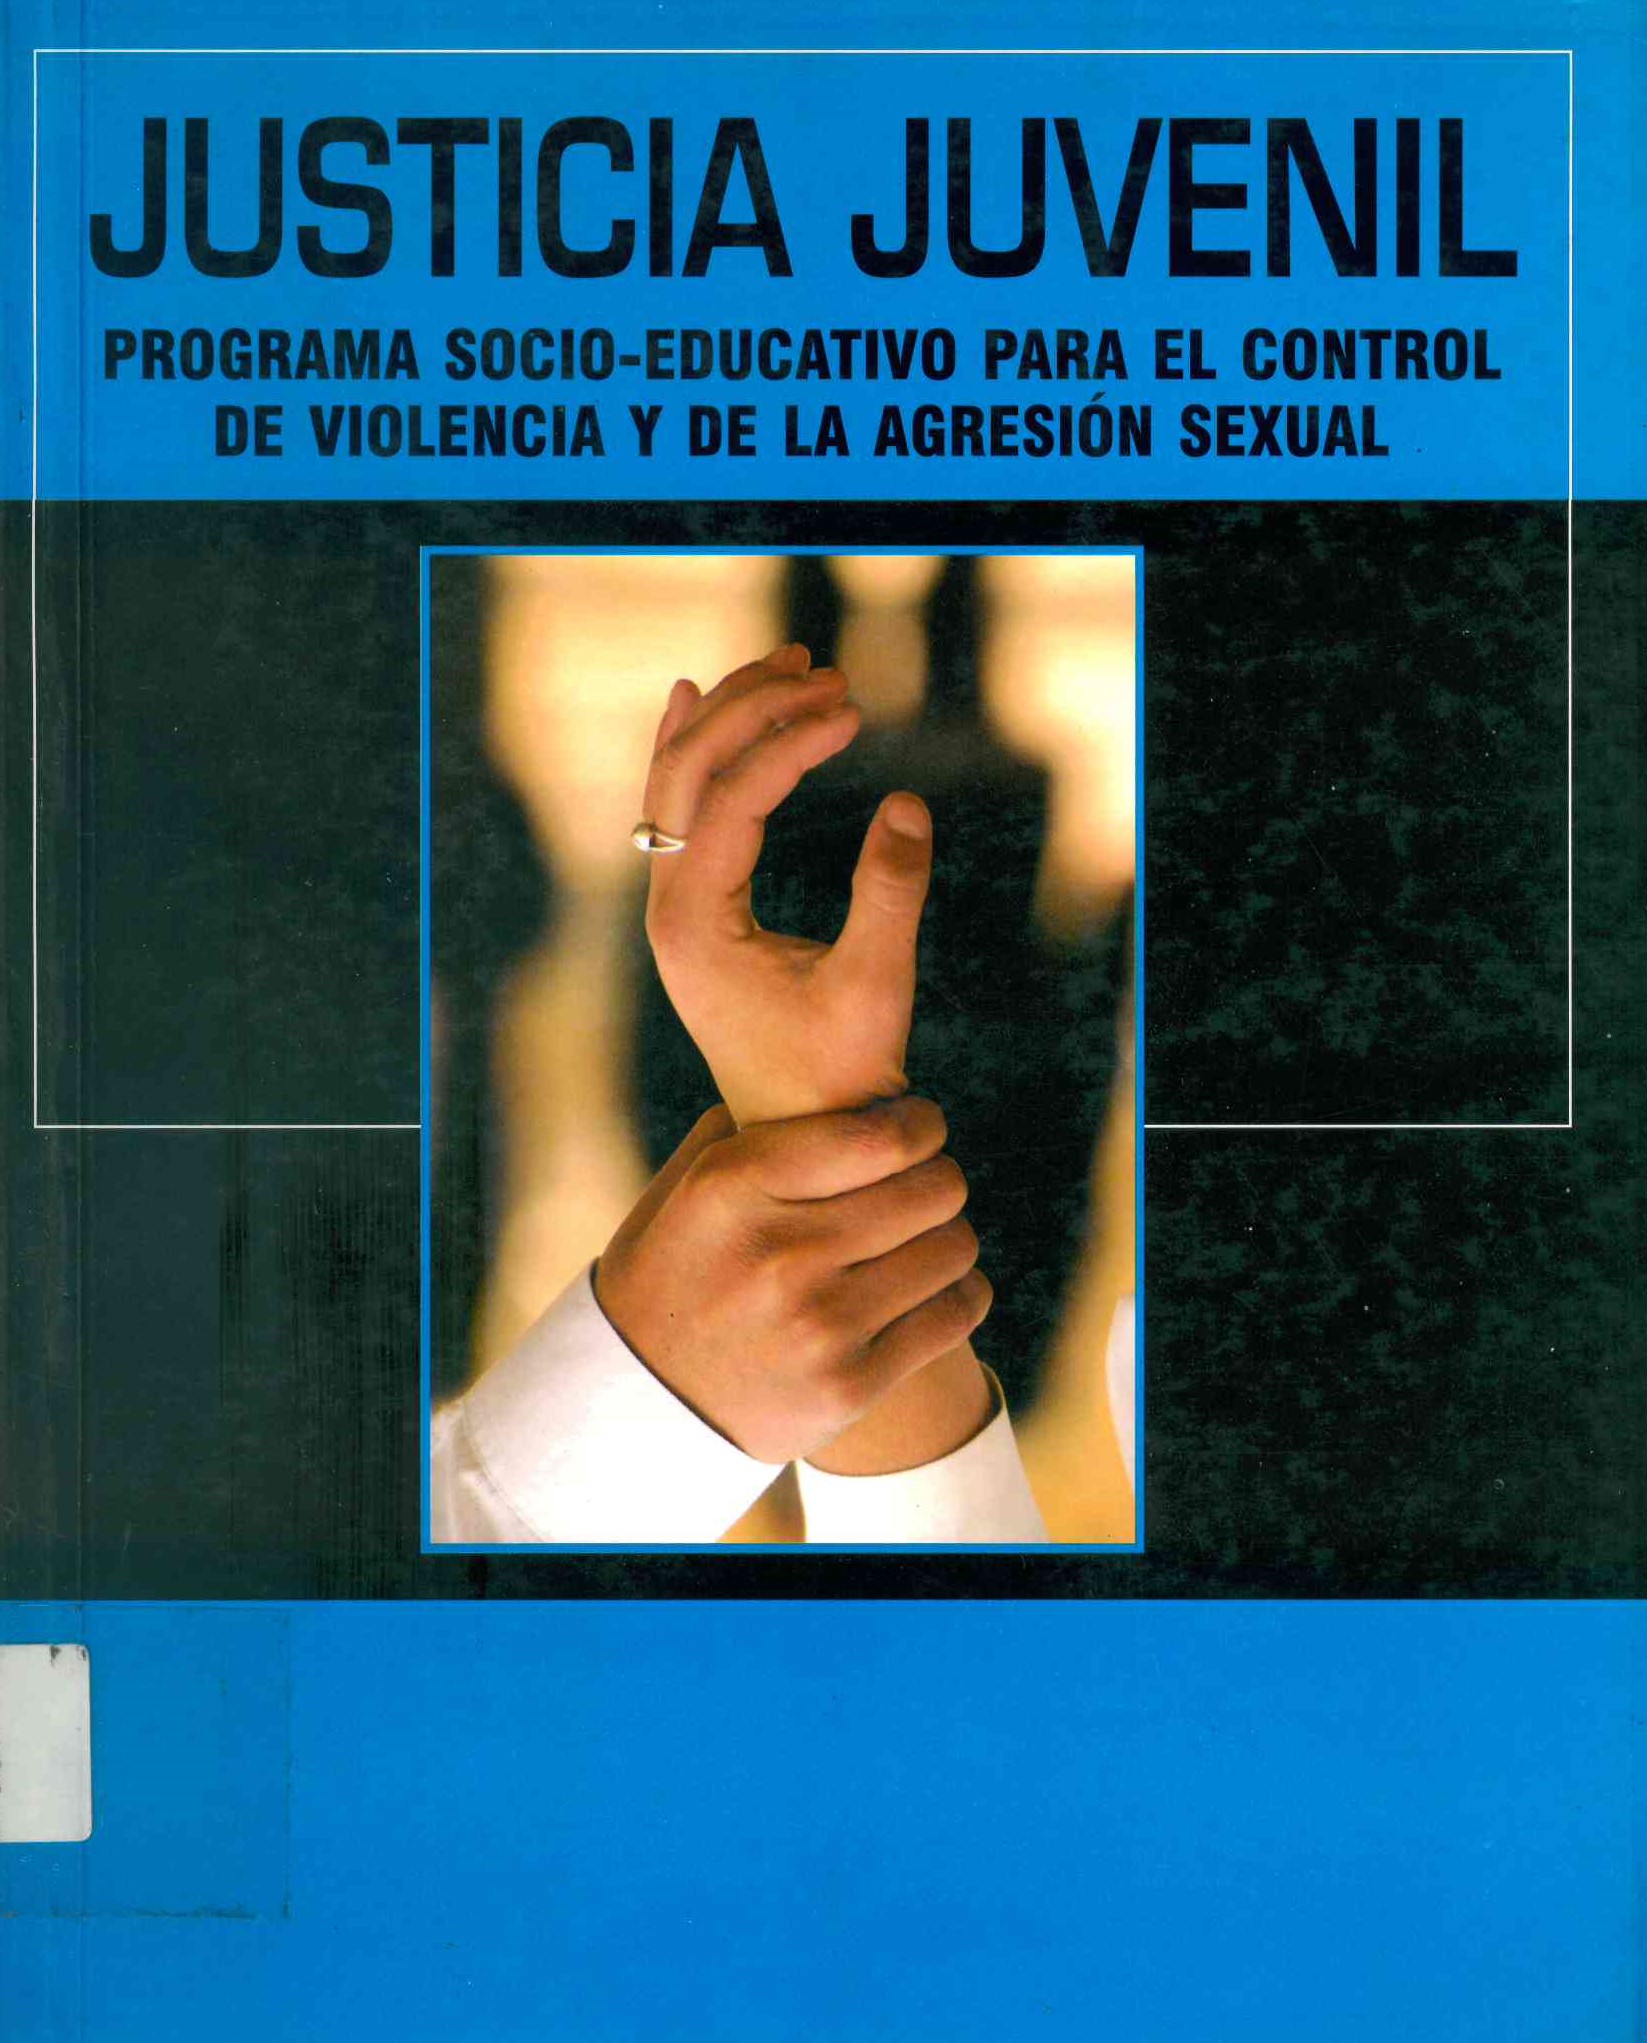 Justicia juvenil Programa socio-educativo para el control de violencia de la agresión sexual